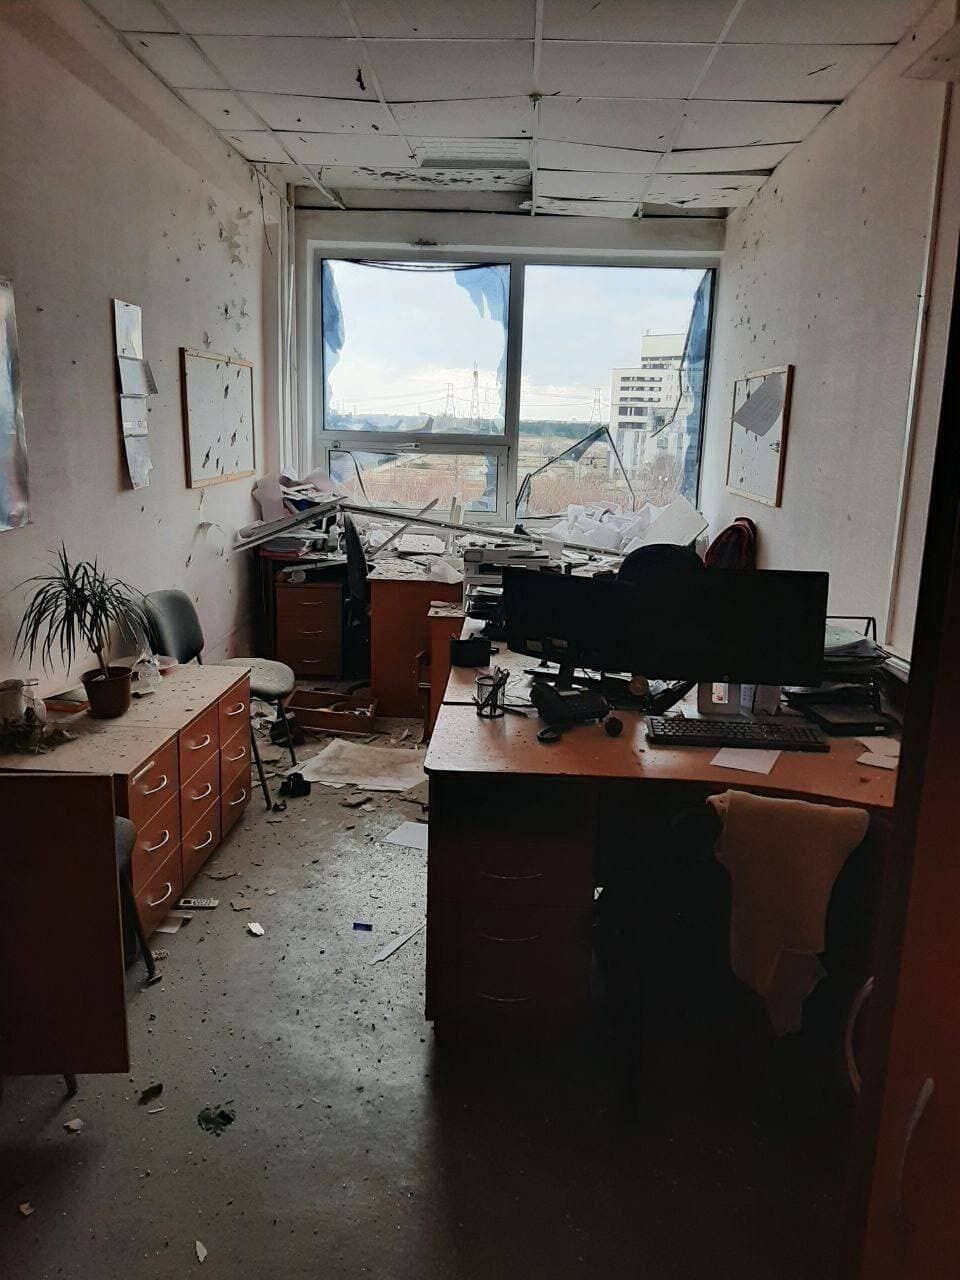 Дыры в стенах и выбитые окна: в сети показали последствия атаки оккупантов на админкорпус Запорожской АЭС. Фото